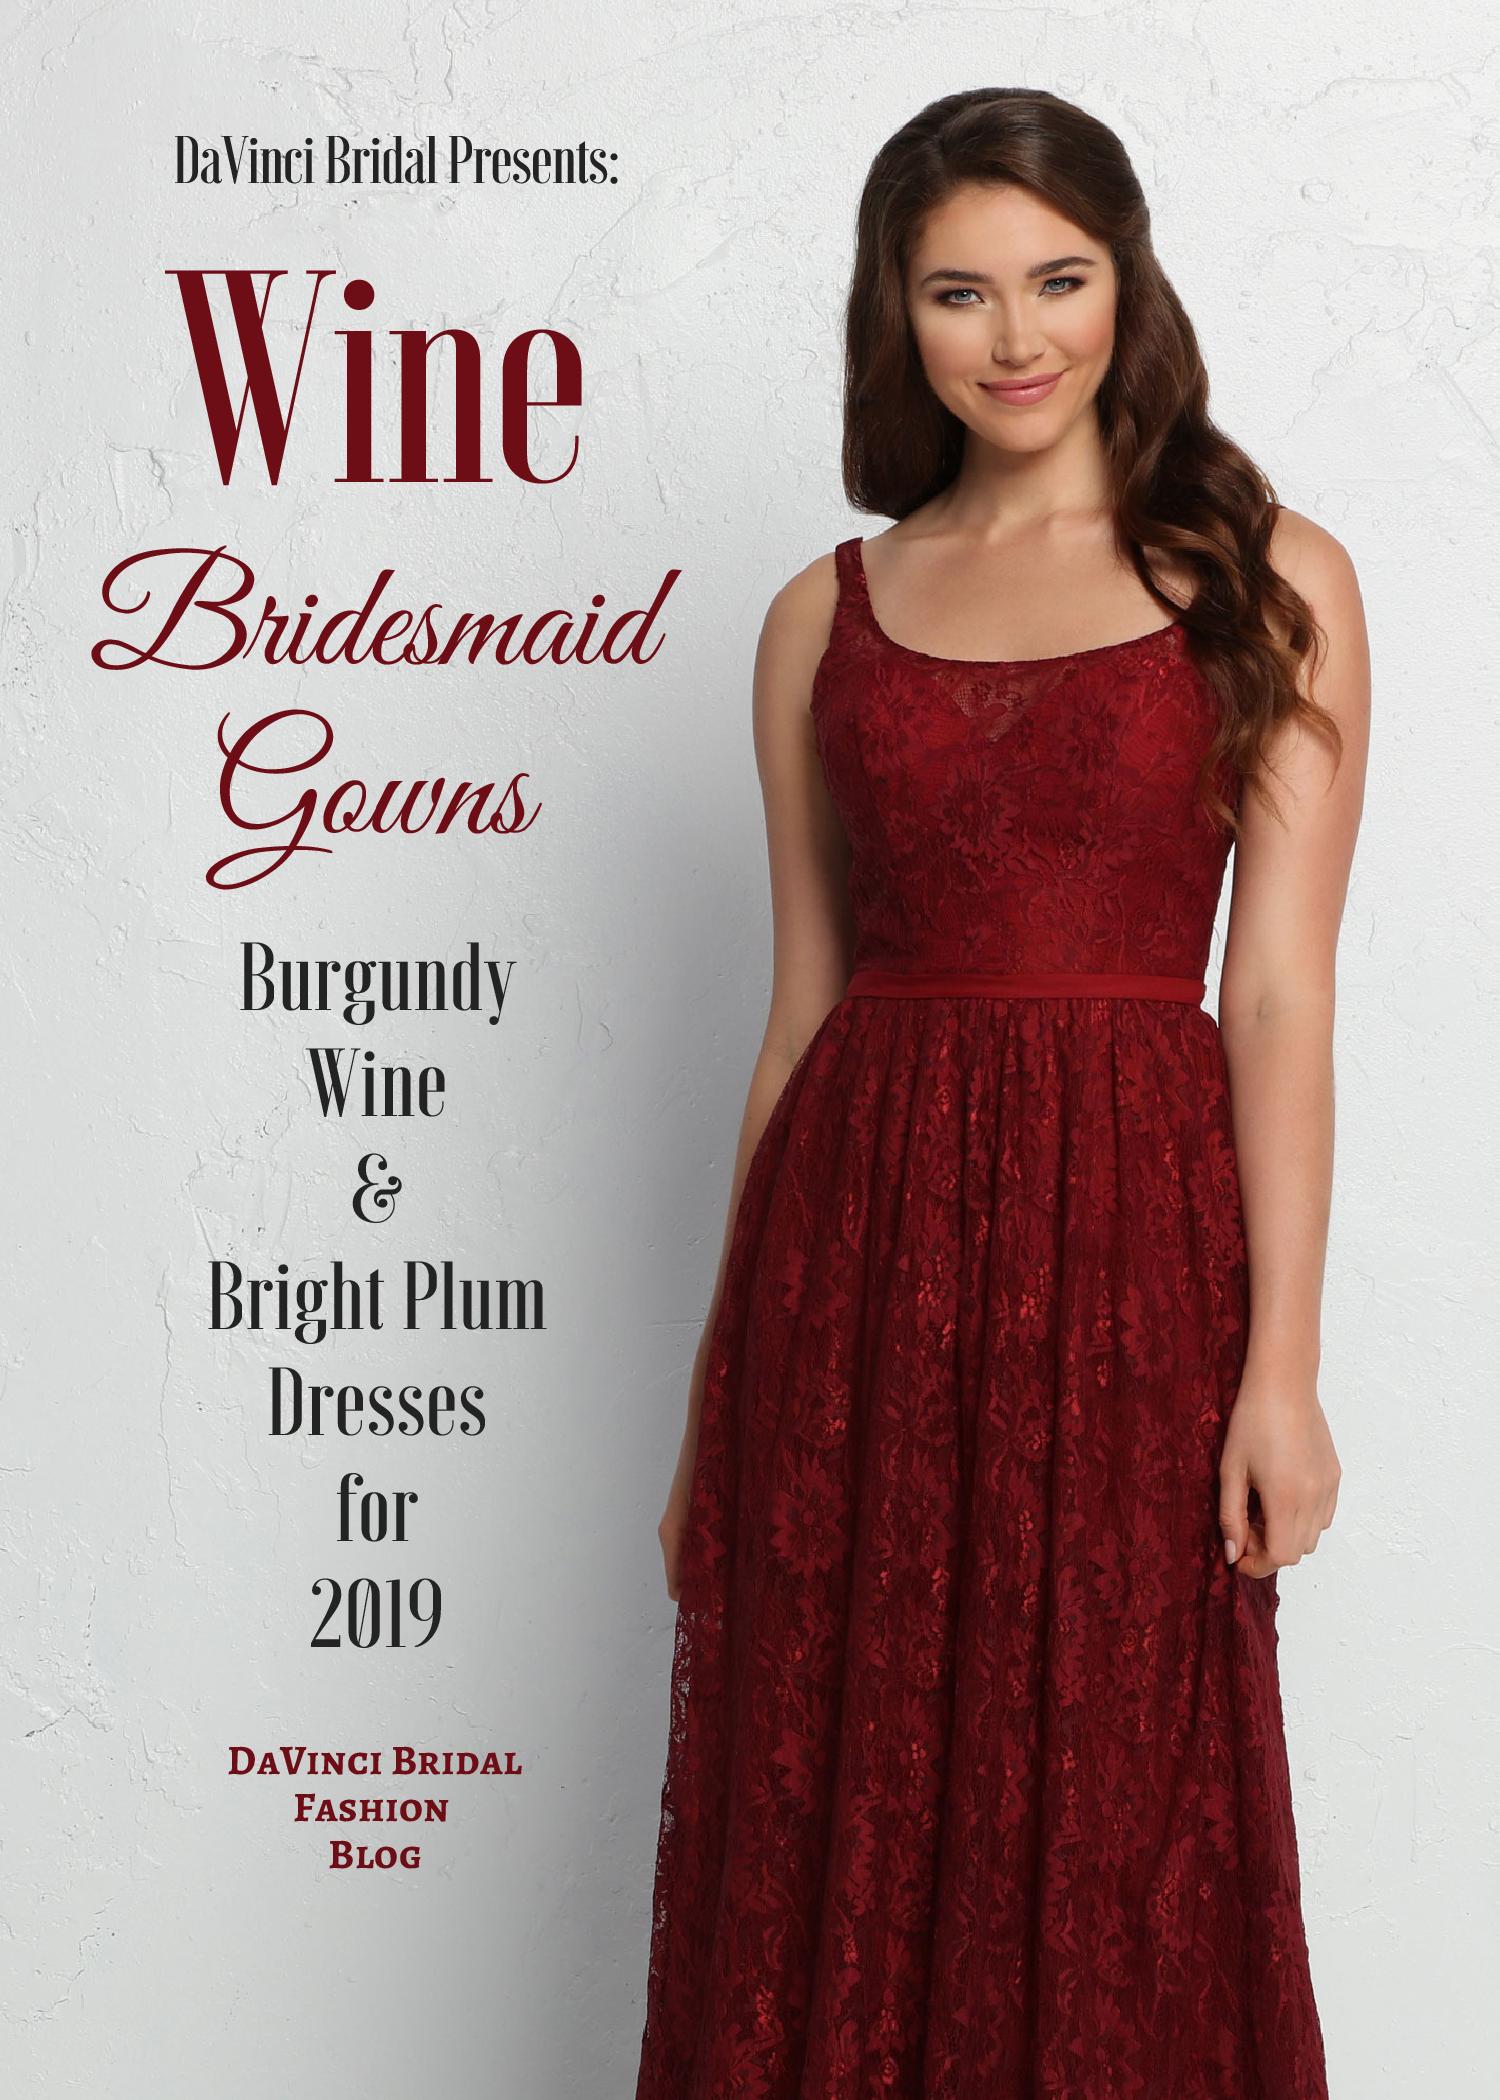 Wine Bridesmaid Dresses in Burgundy, Wine, Bright Plum